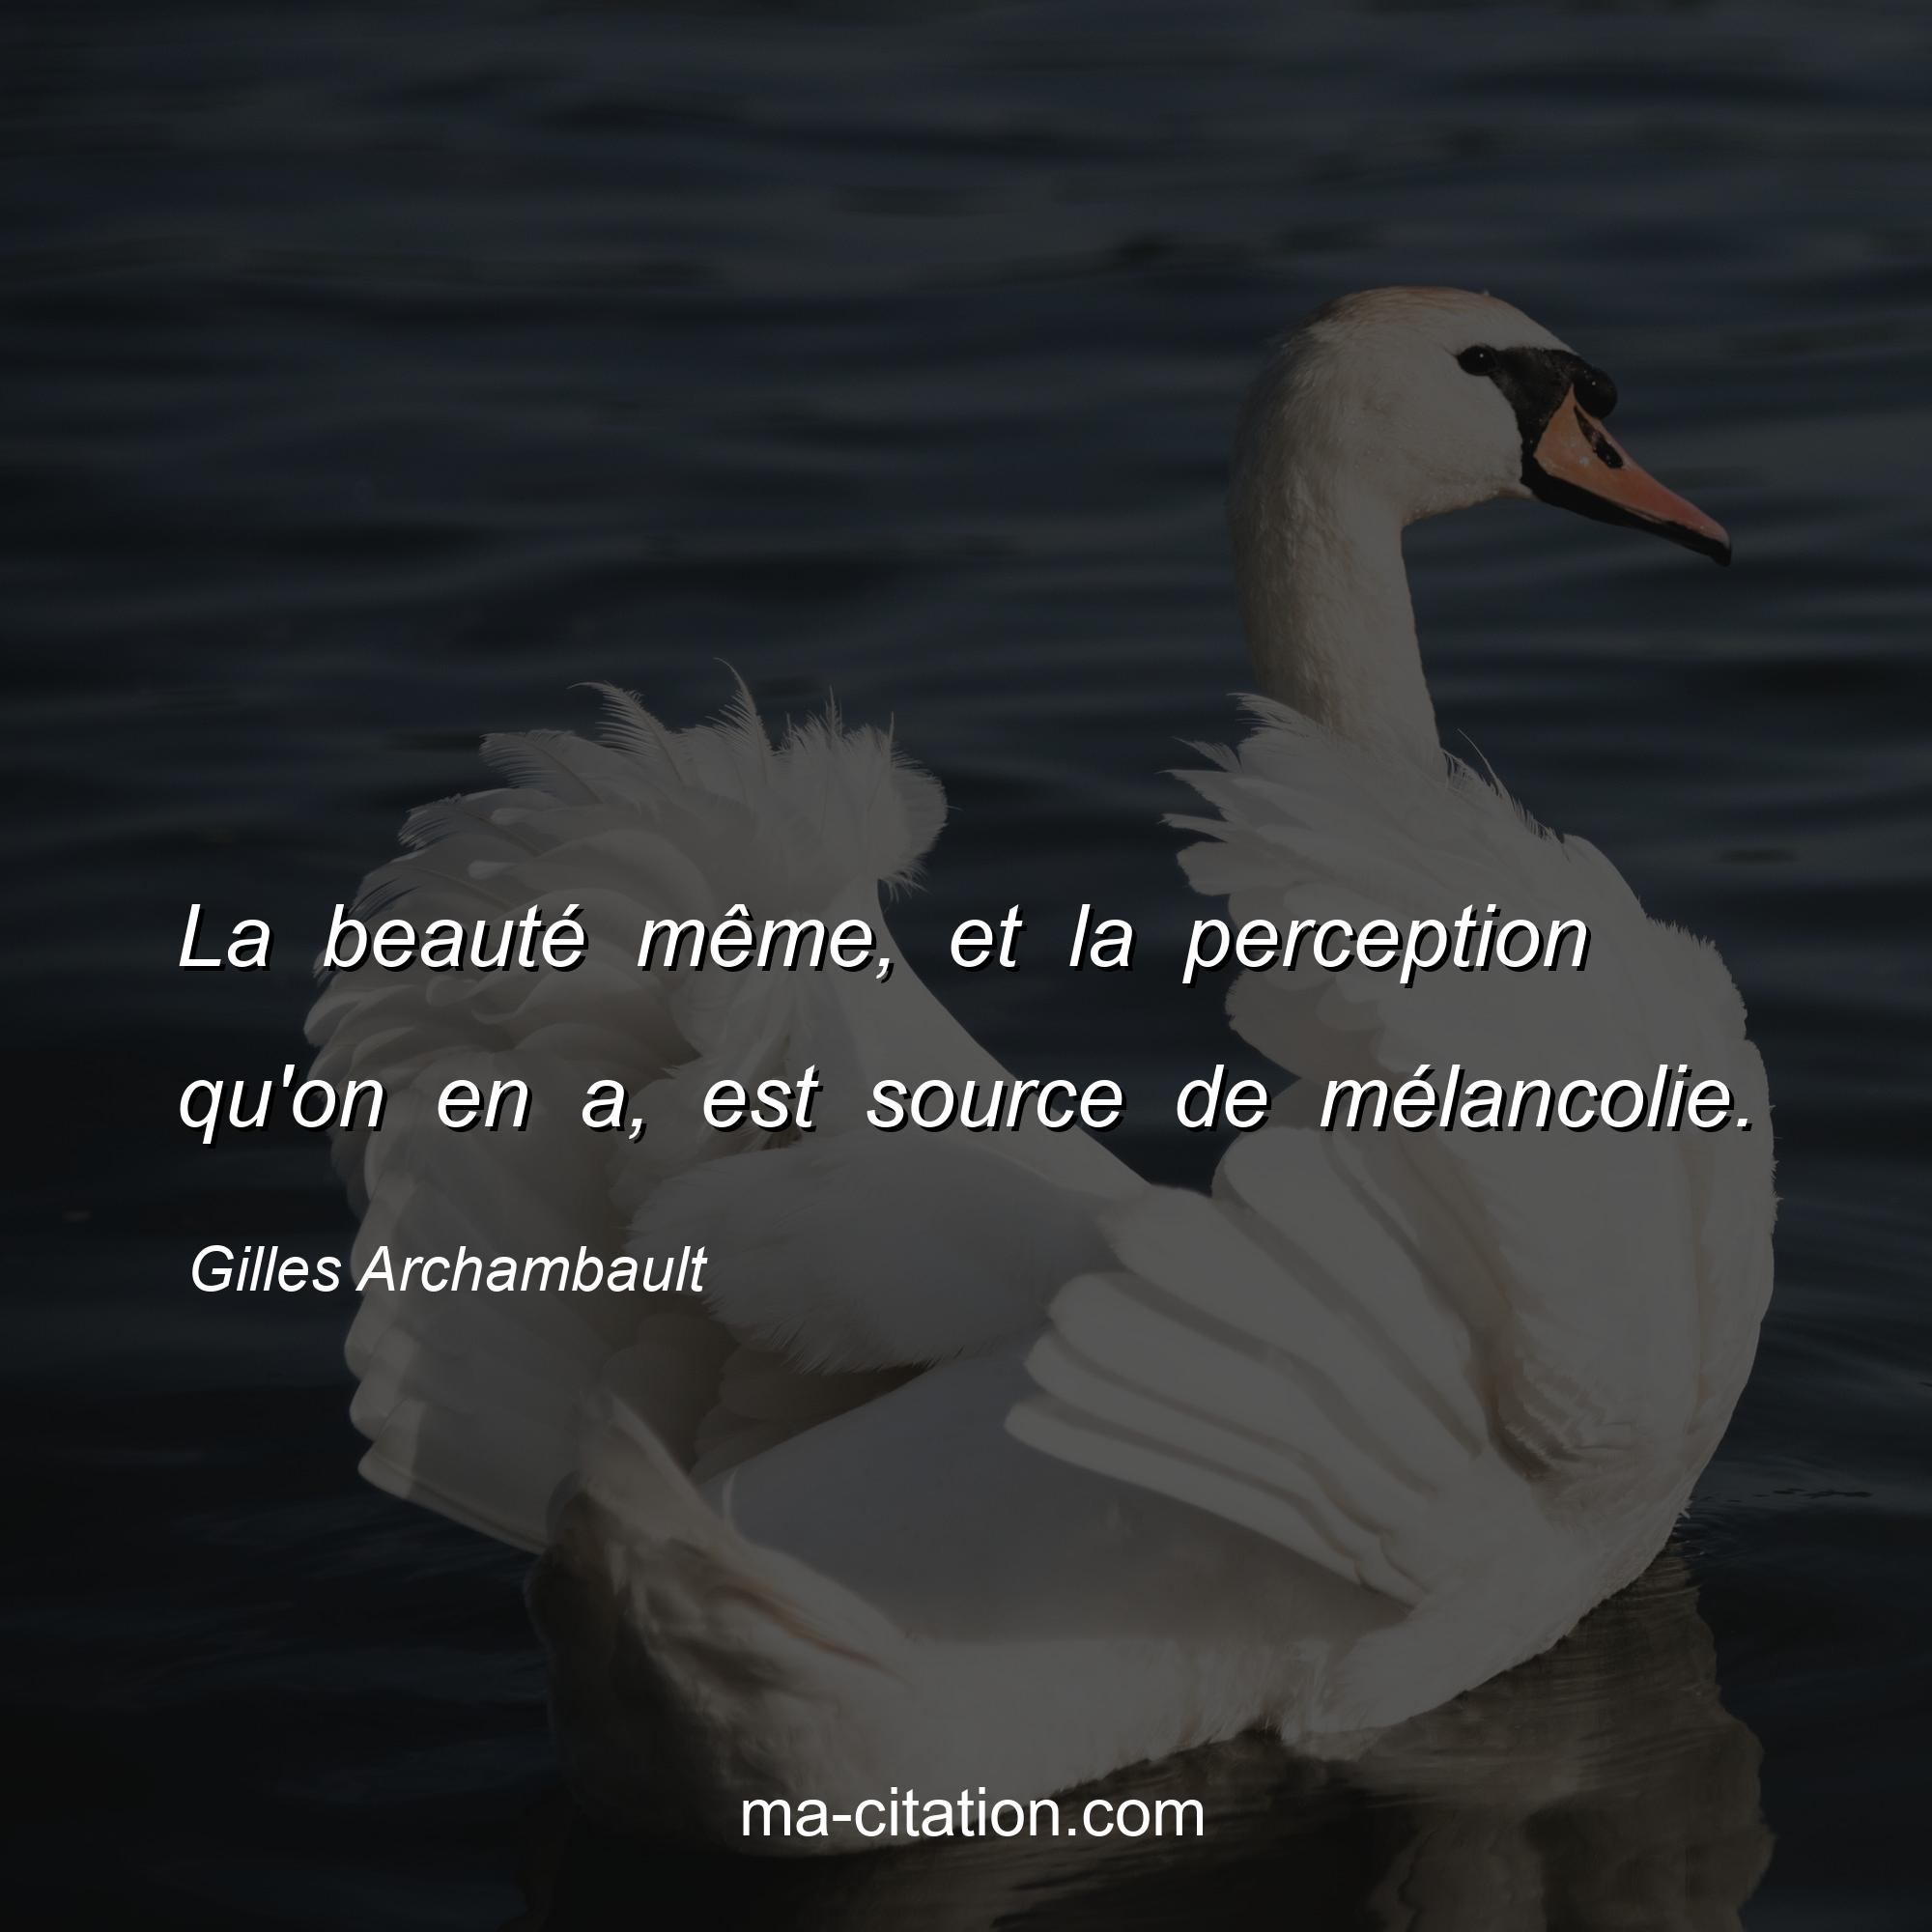 Gilles Archambault : La beauté même, et la perception qu'on en a, est source de mélancolie.